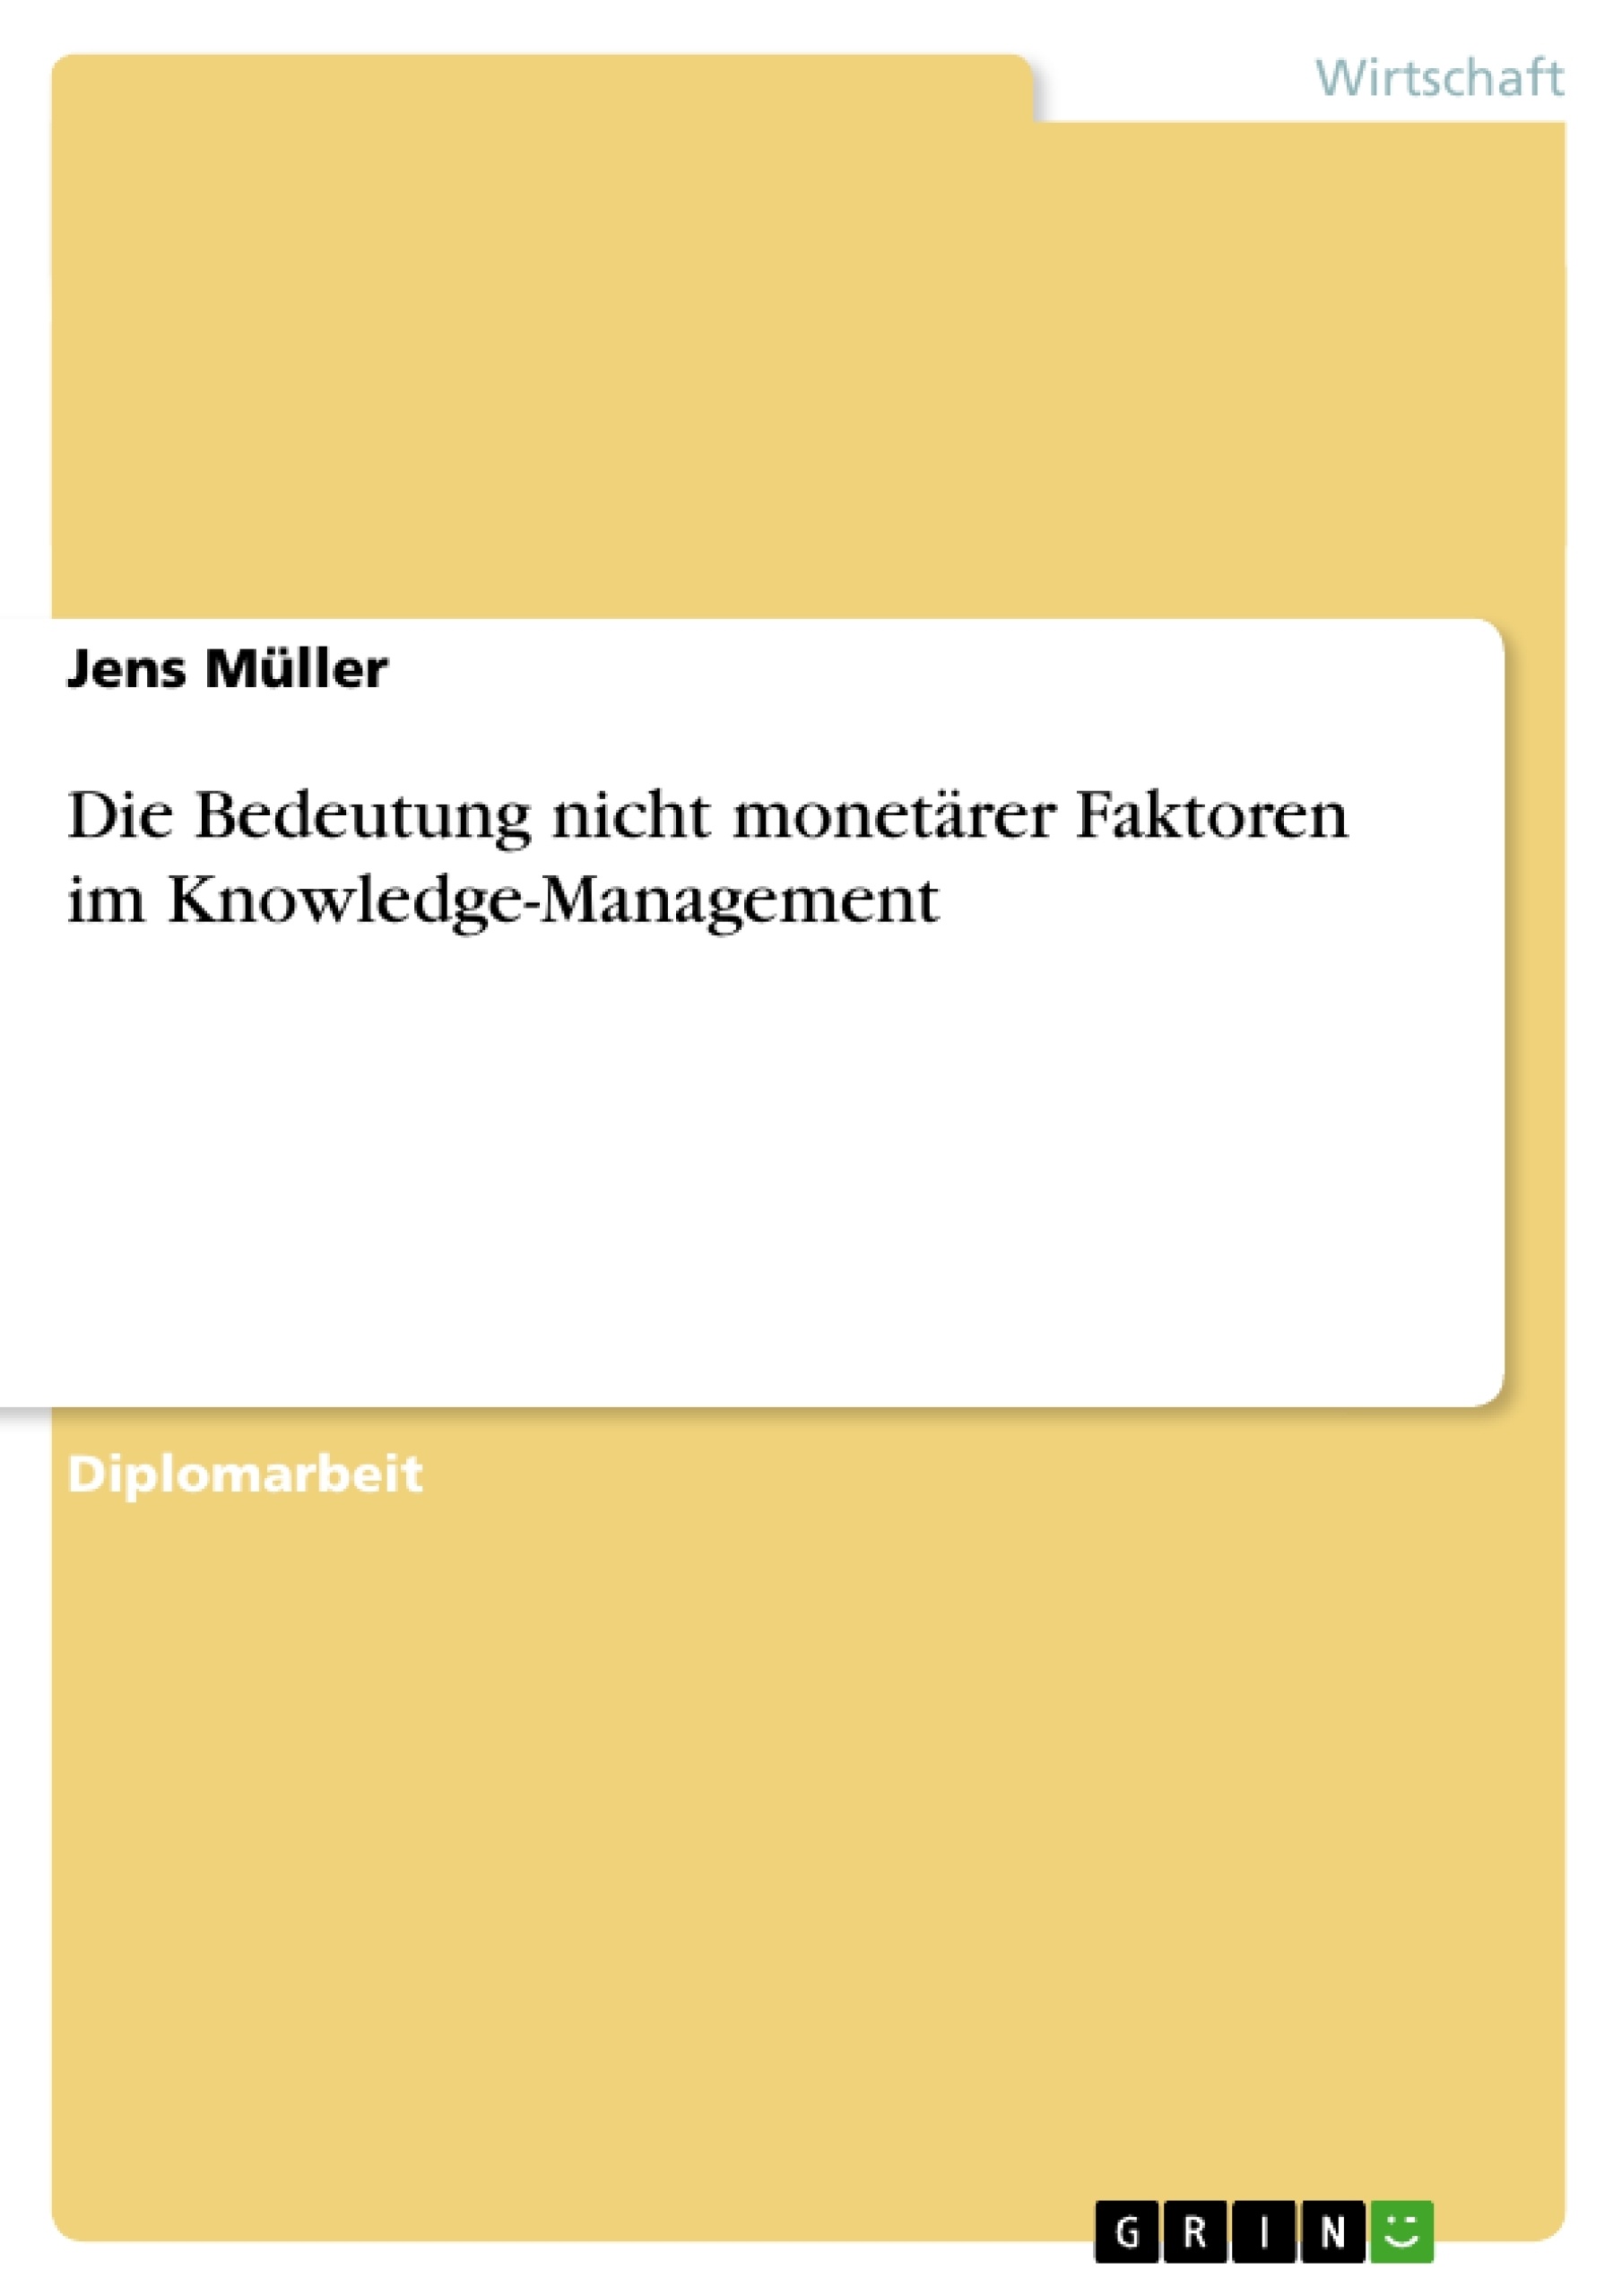 Título: Die Bedeutung nicht monetärer Faktoren im Knowledge-Management